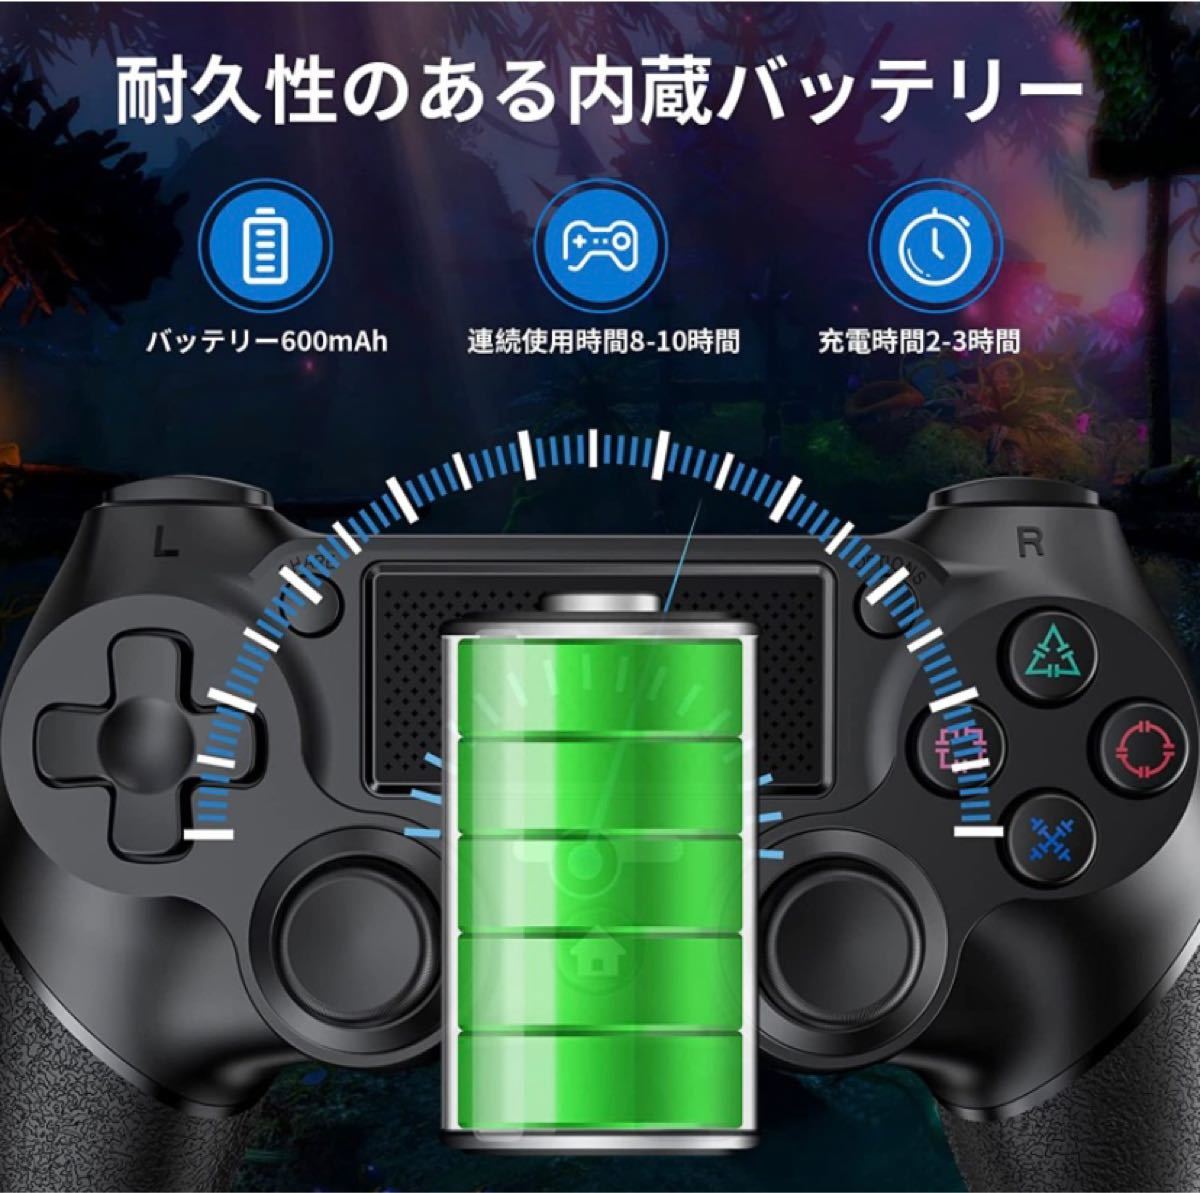 PS4 コントローラー ワイヤレス Bluetooth接続 無線 10時間連続使用 遅延なし ゲームパット搭載 